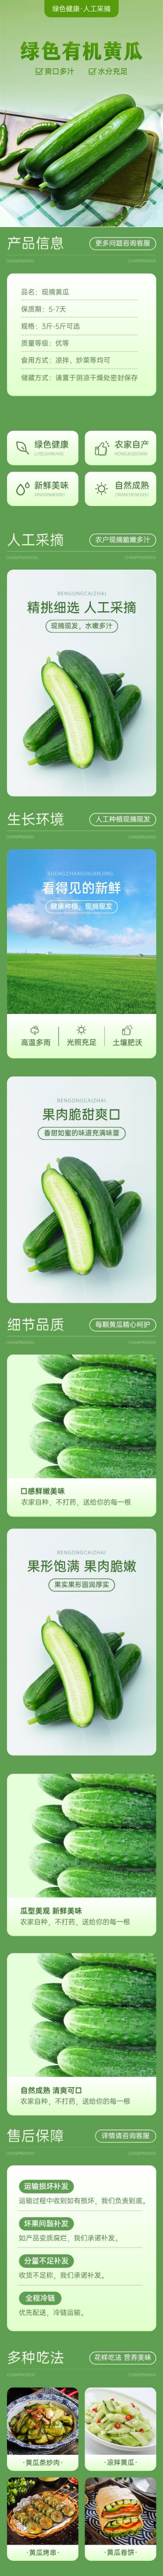 生鲜蔬菜黄瓜商品详情页预览效果